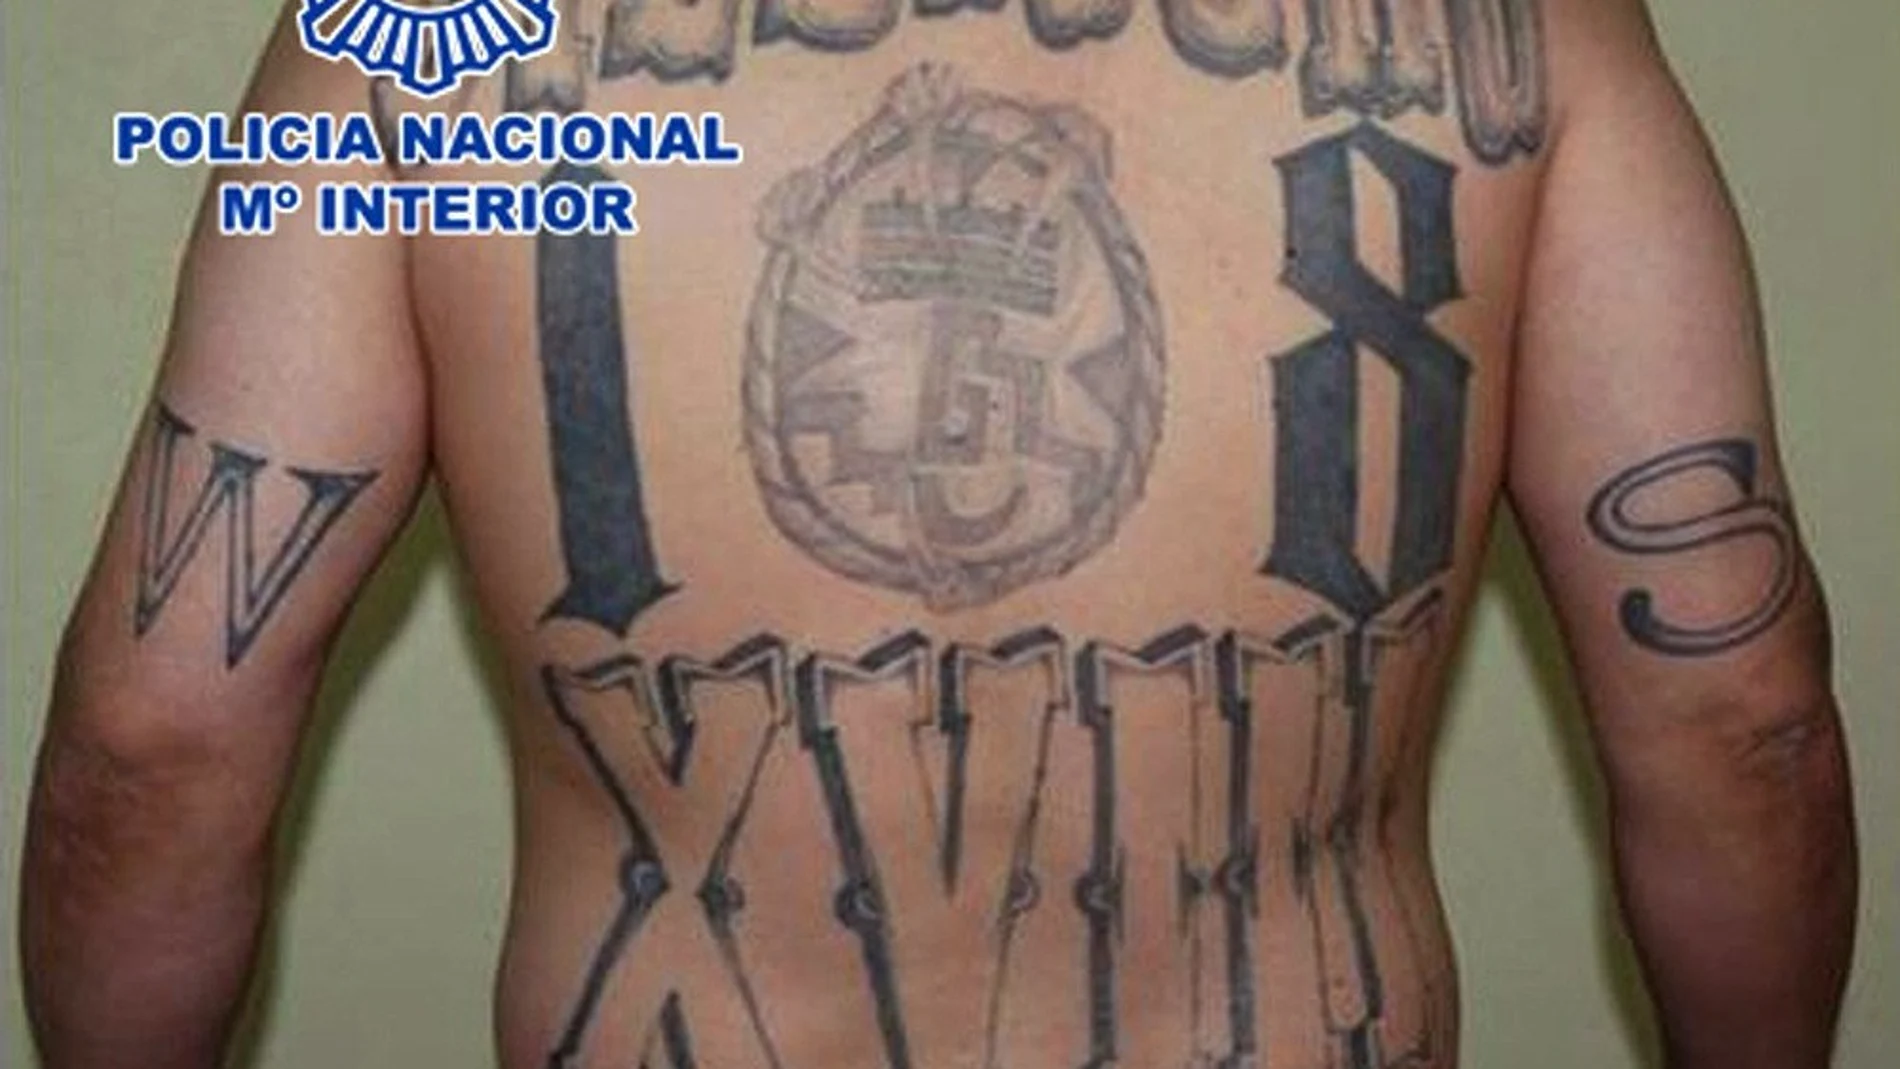 Fotografía facilitada por la Policía Nacional, de "El Mexicano", que ha sido detenido en Leganés